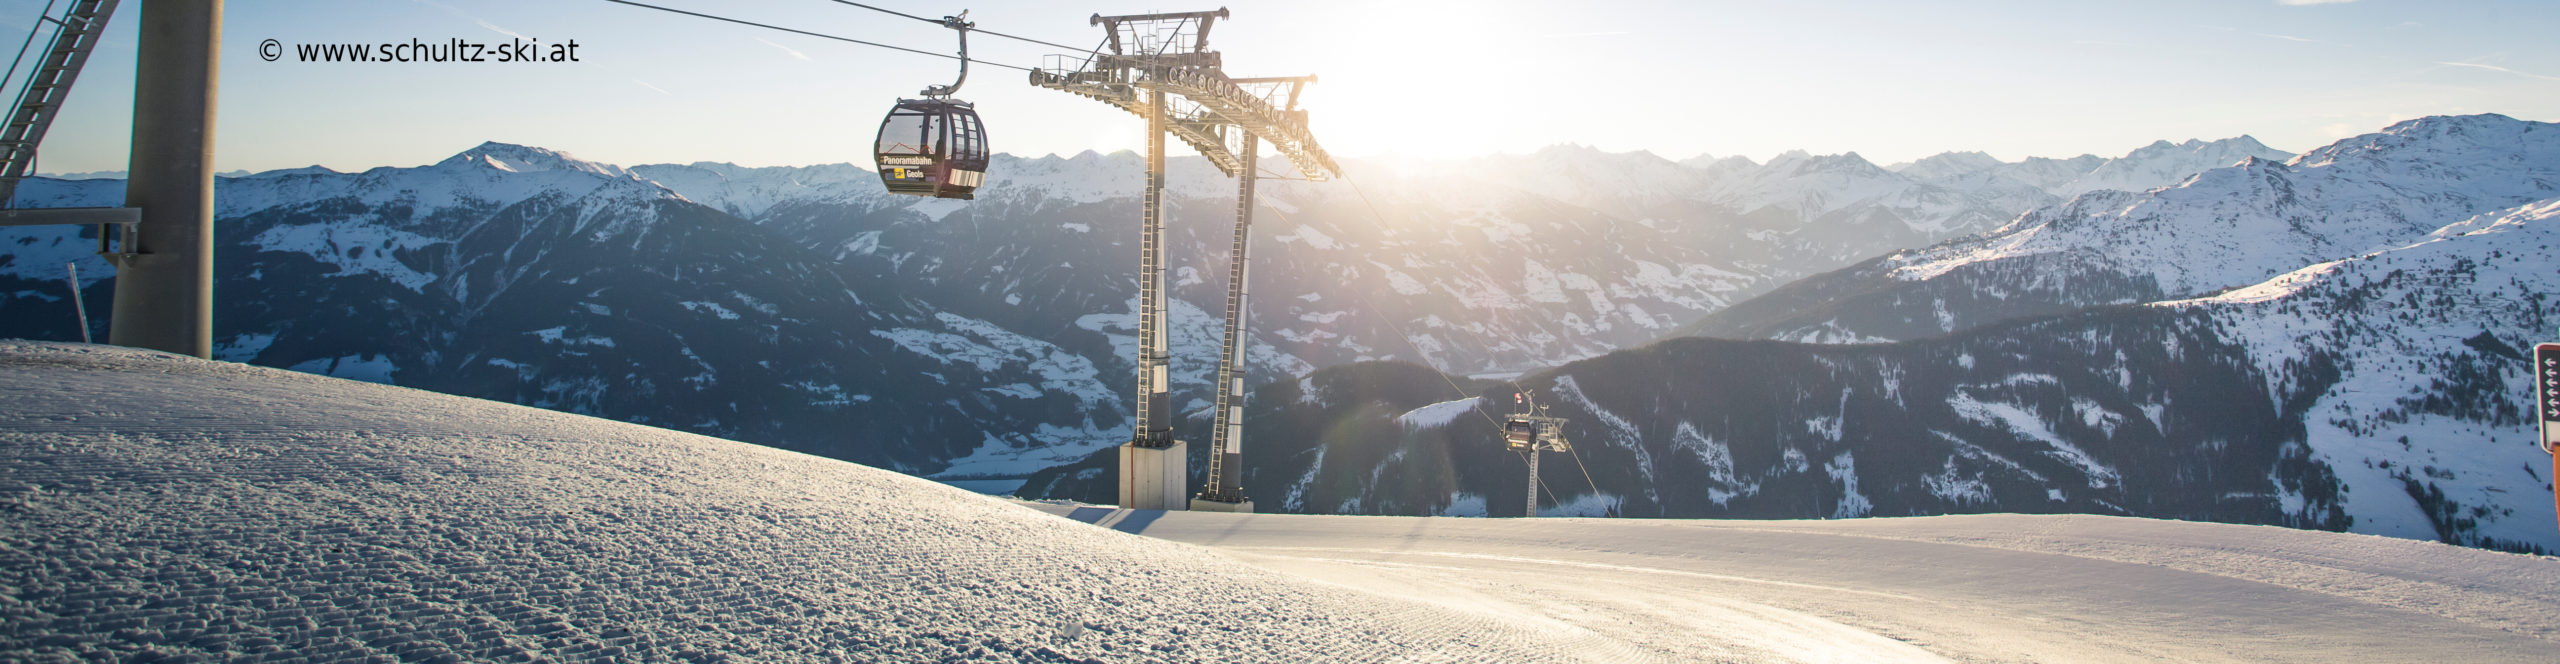 ZILLERTAL – verlängertes Skiwochenende mit 4 Skitagen – in den Weihnachtsferien – Hotel in Strass 